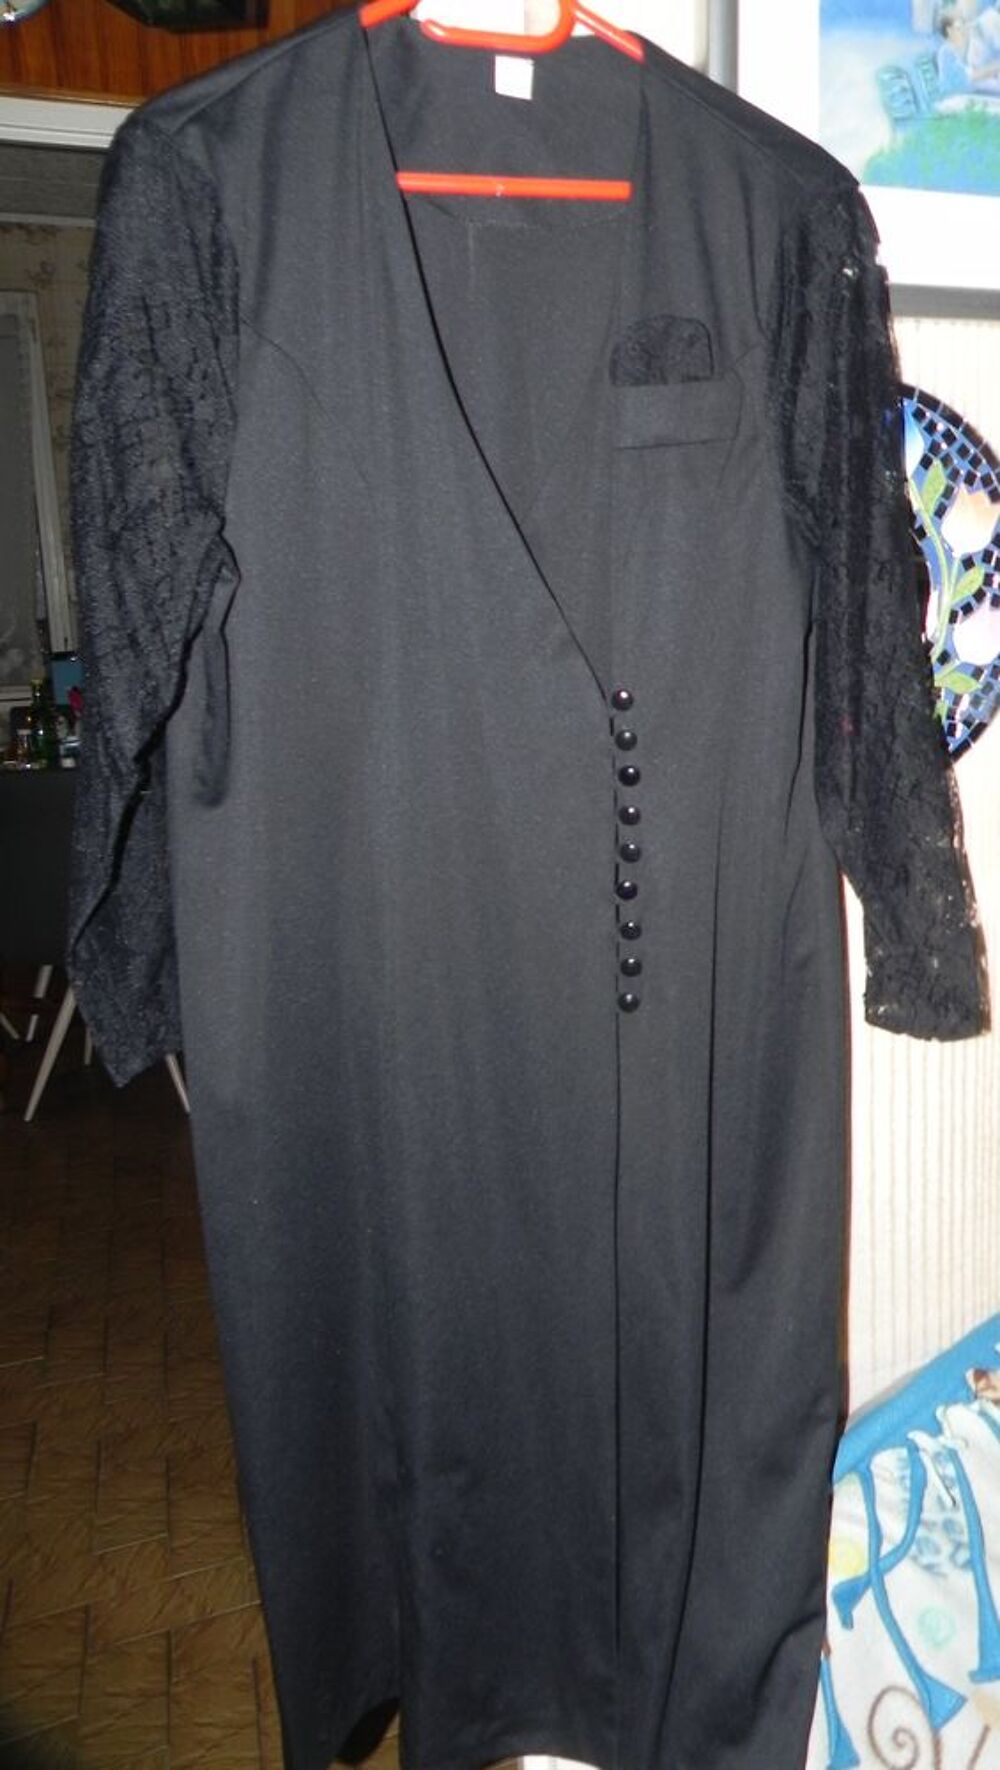 Robe noire avec manches longues en dentelle, taille 48. Vtements